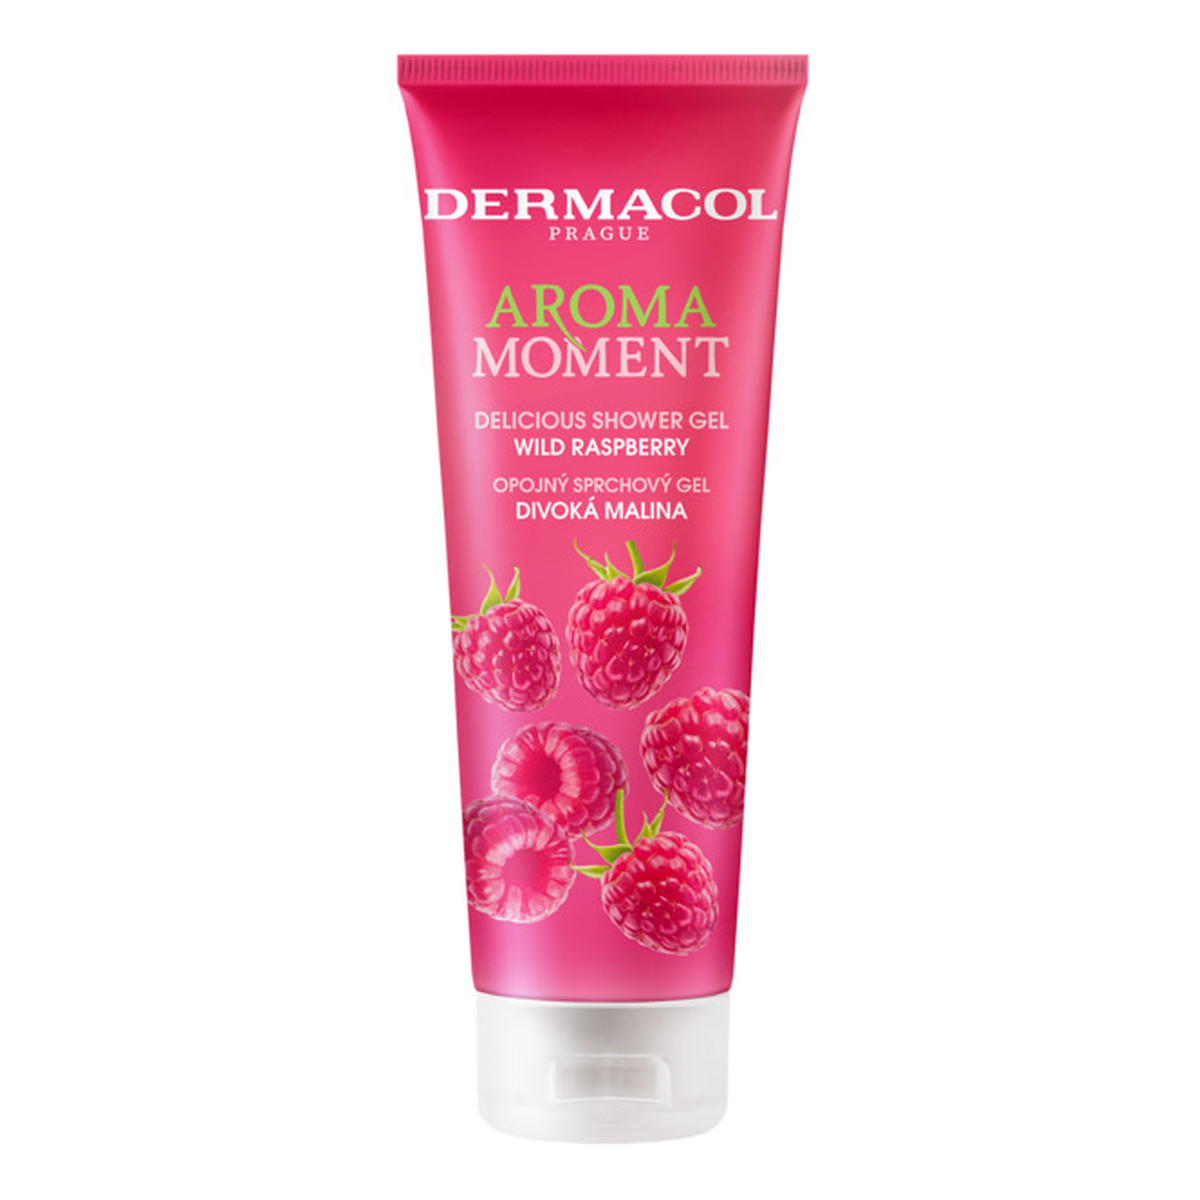 Dermacol Aroma Moment Delicious Shower Gel Żel pod prysznic wild raspberry 250ml